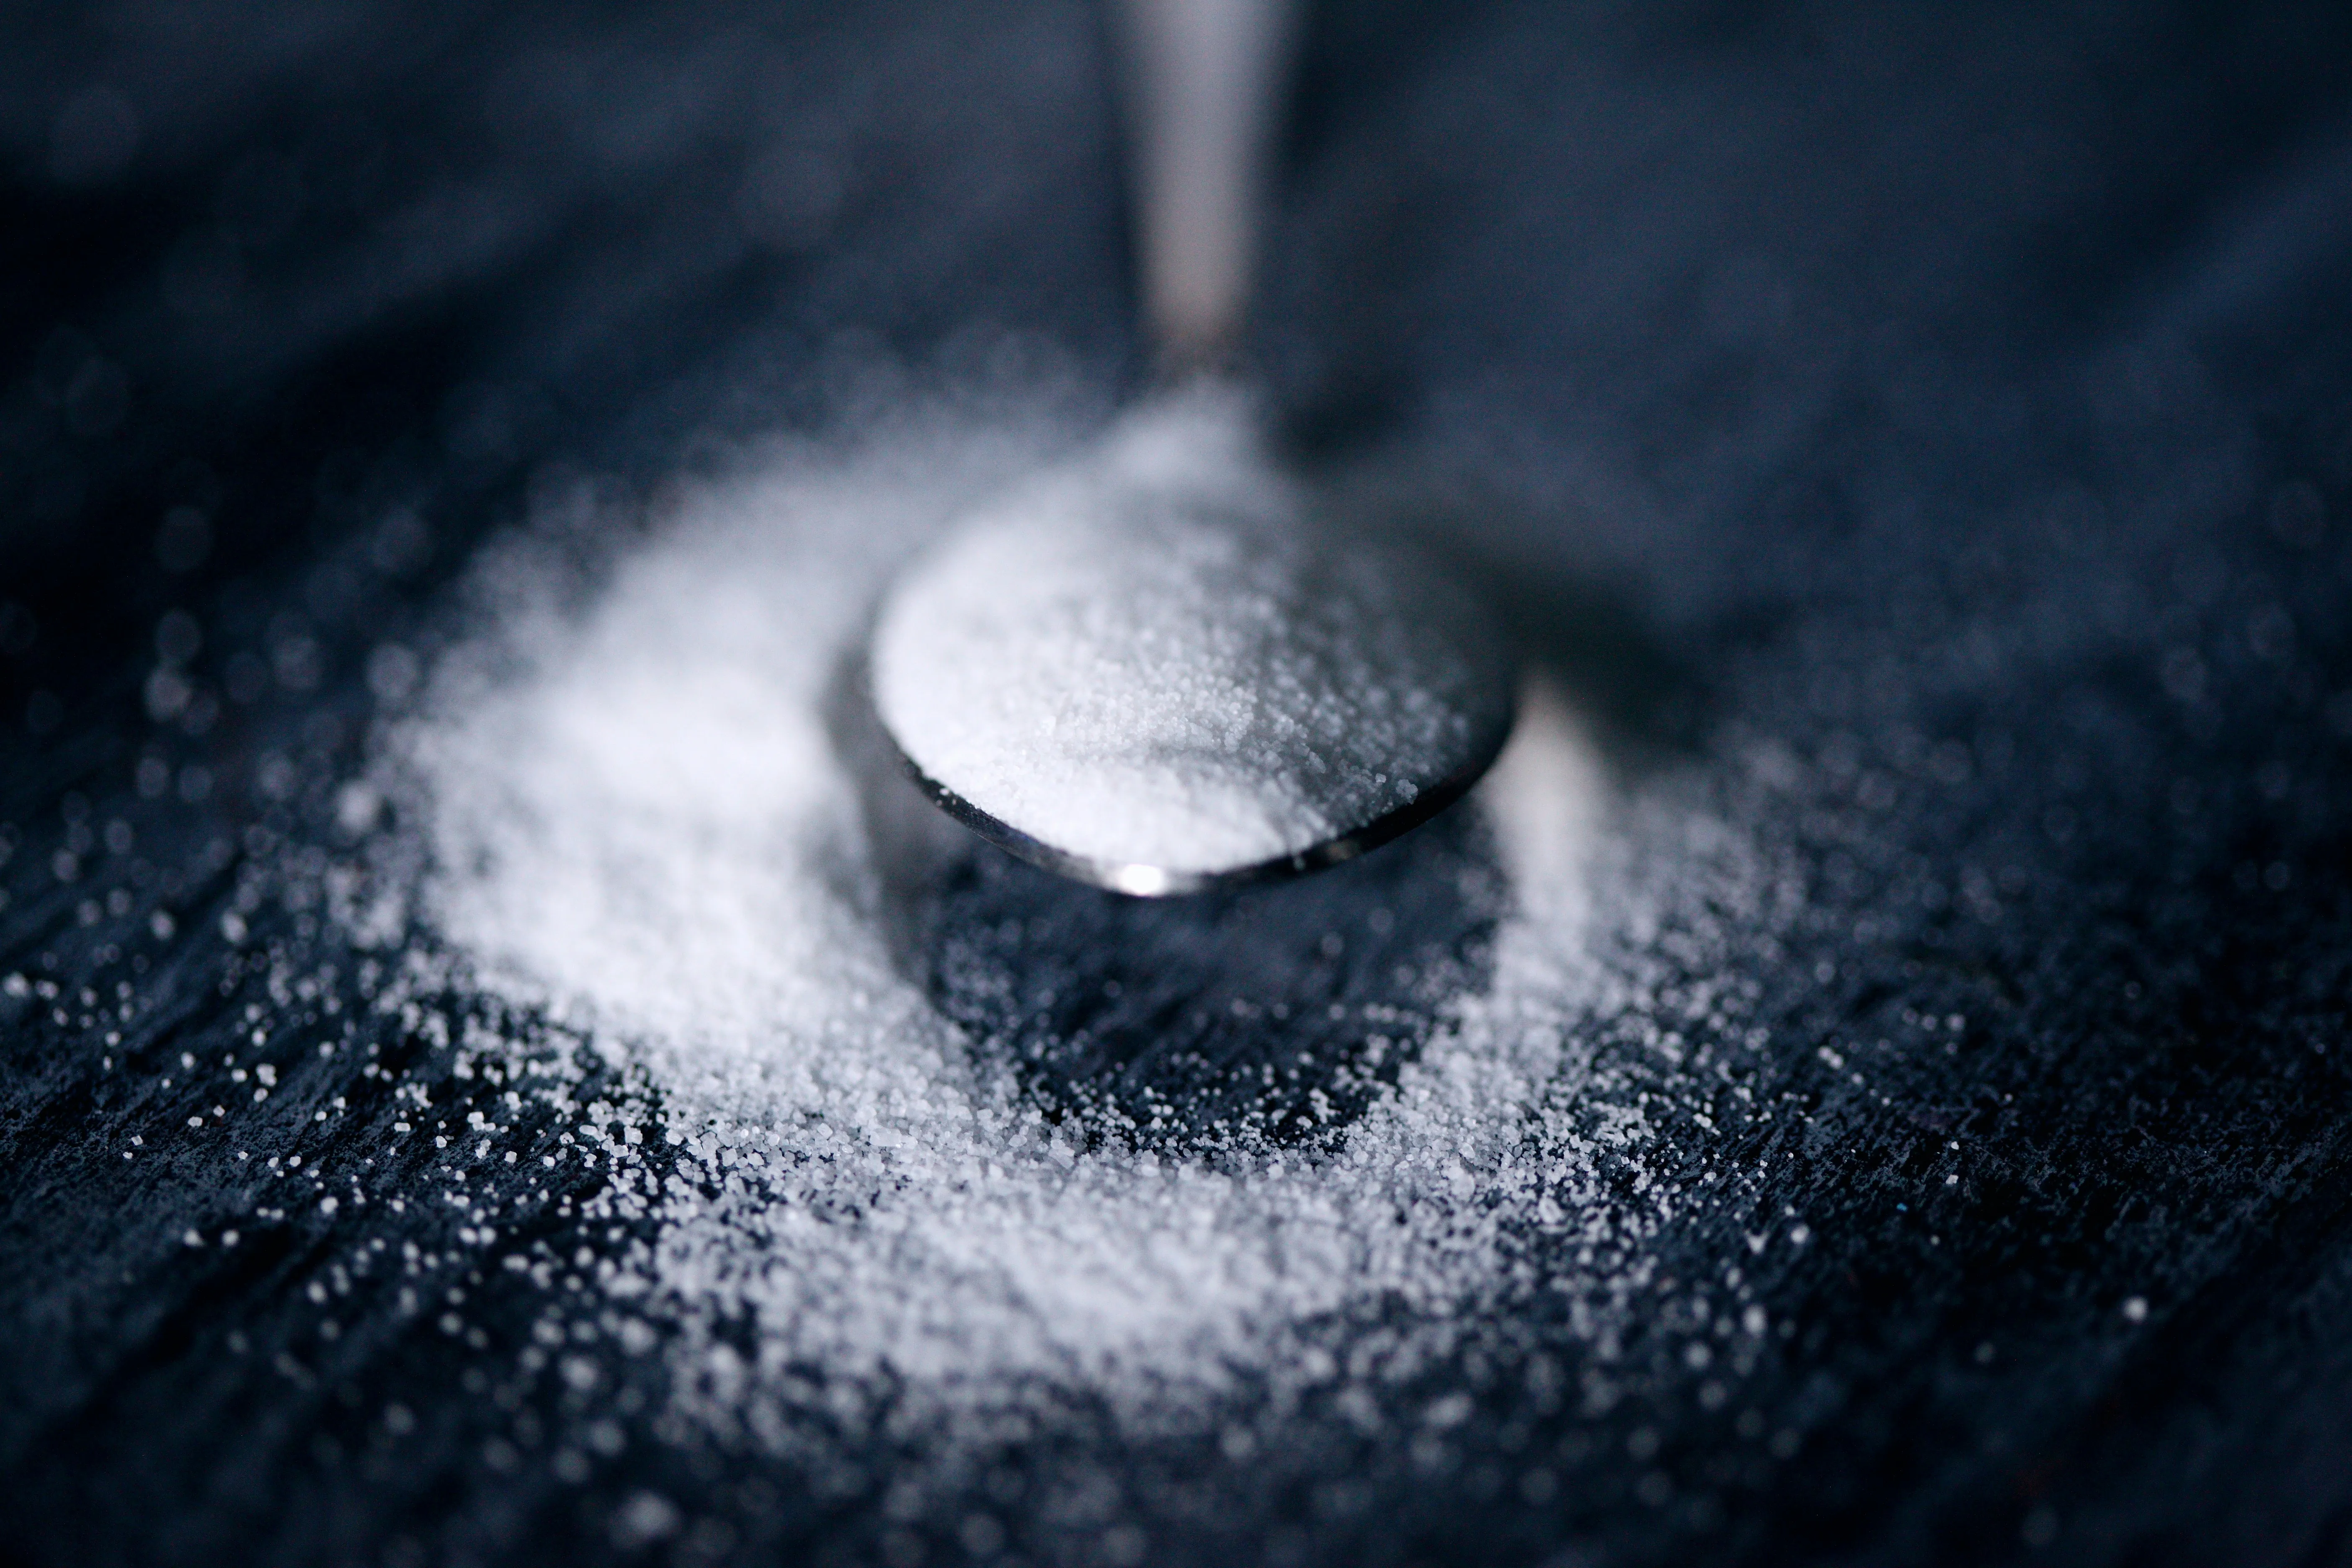 Как приготовить ванильный сахар